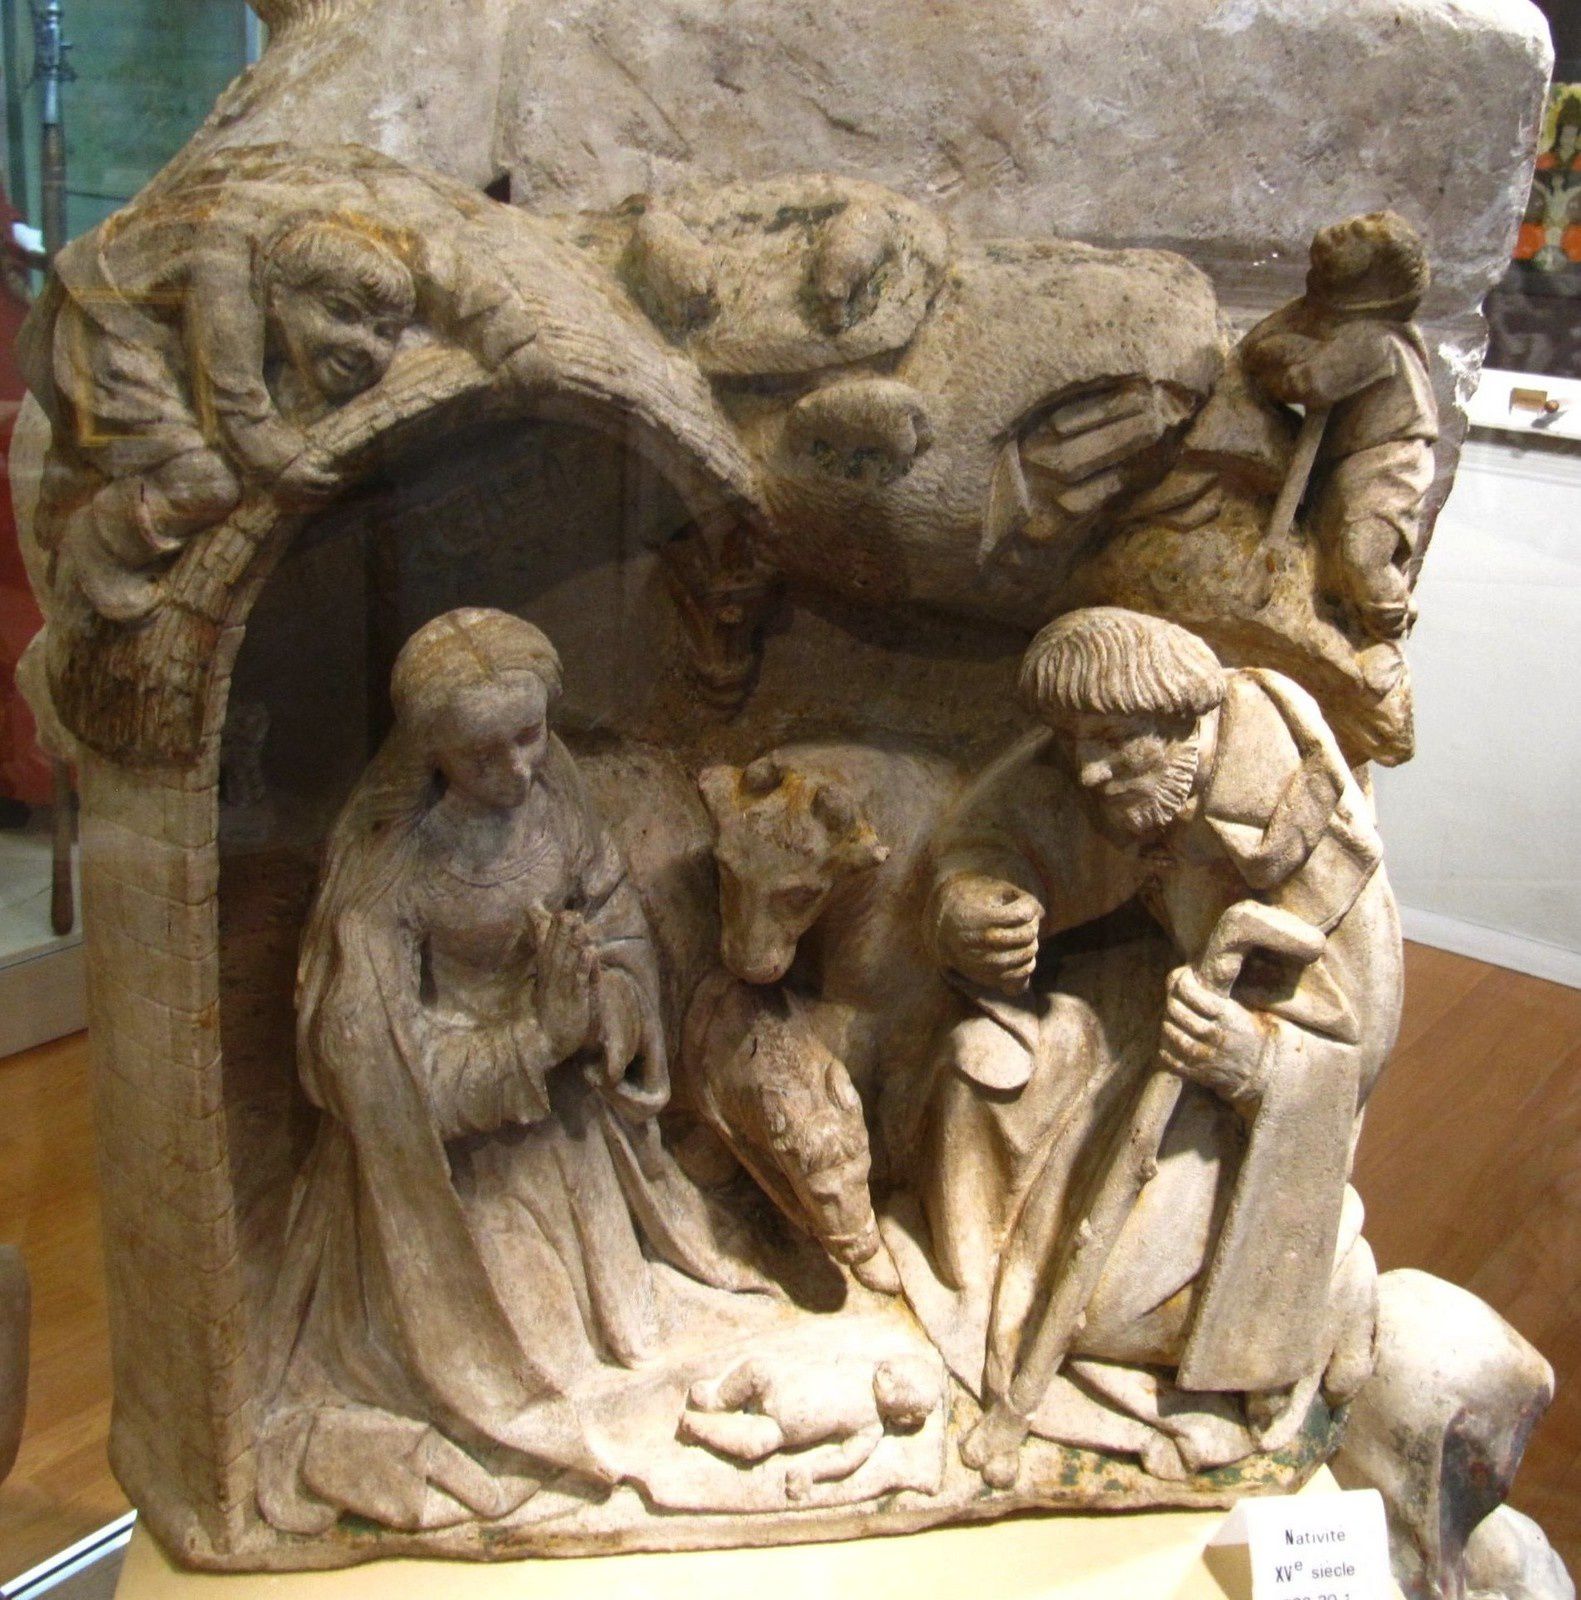 Nativité, musée de Toul (Lorraine)